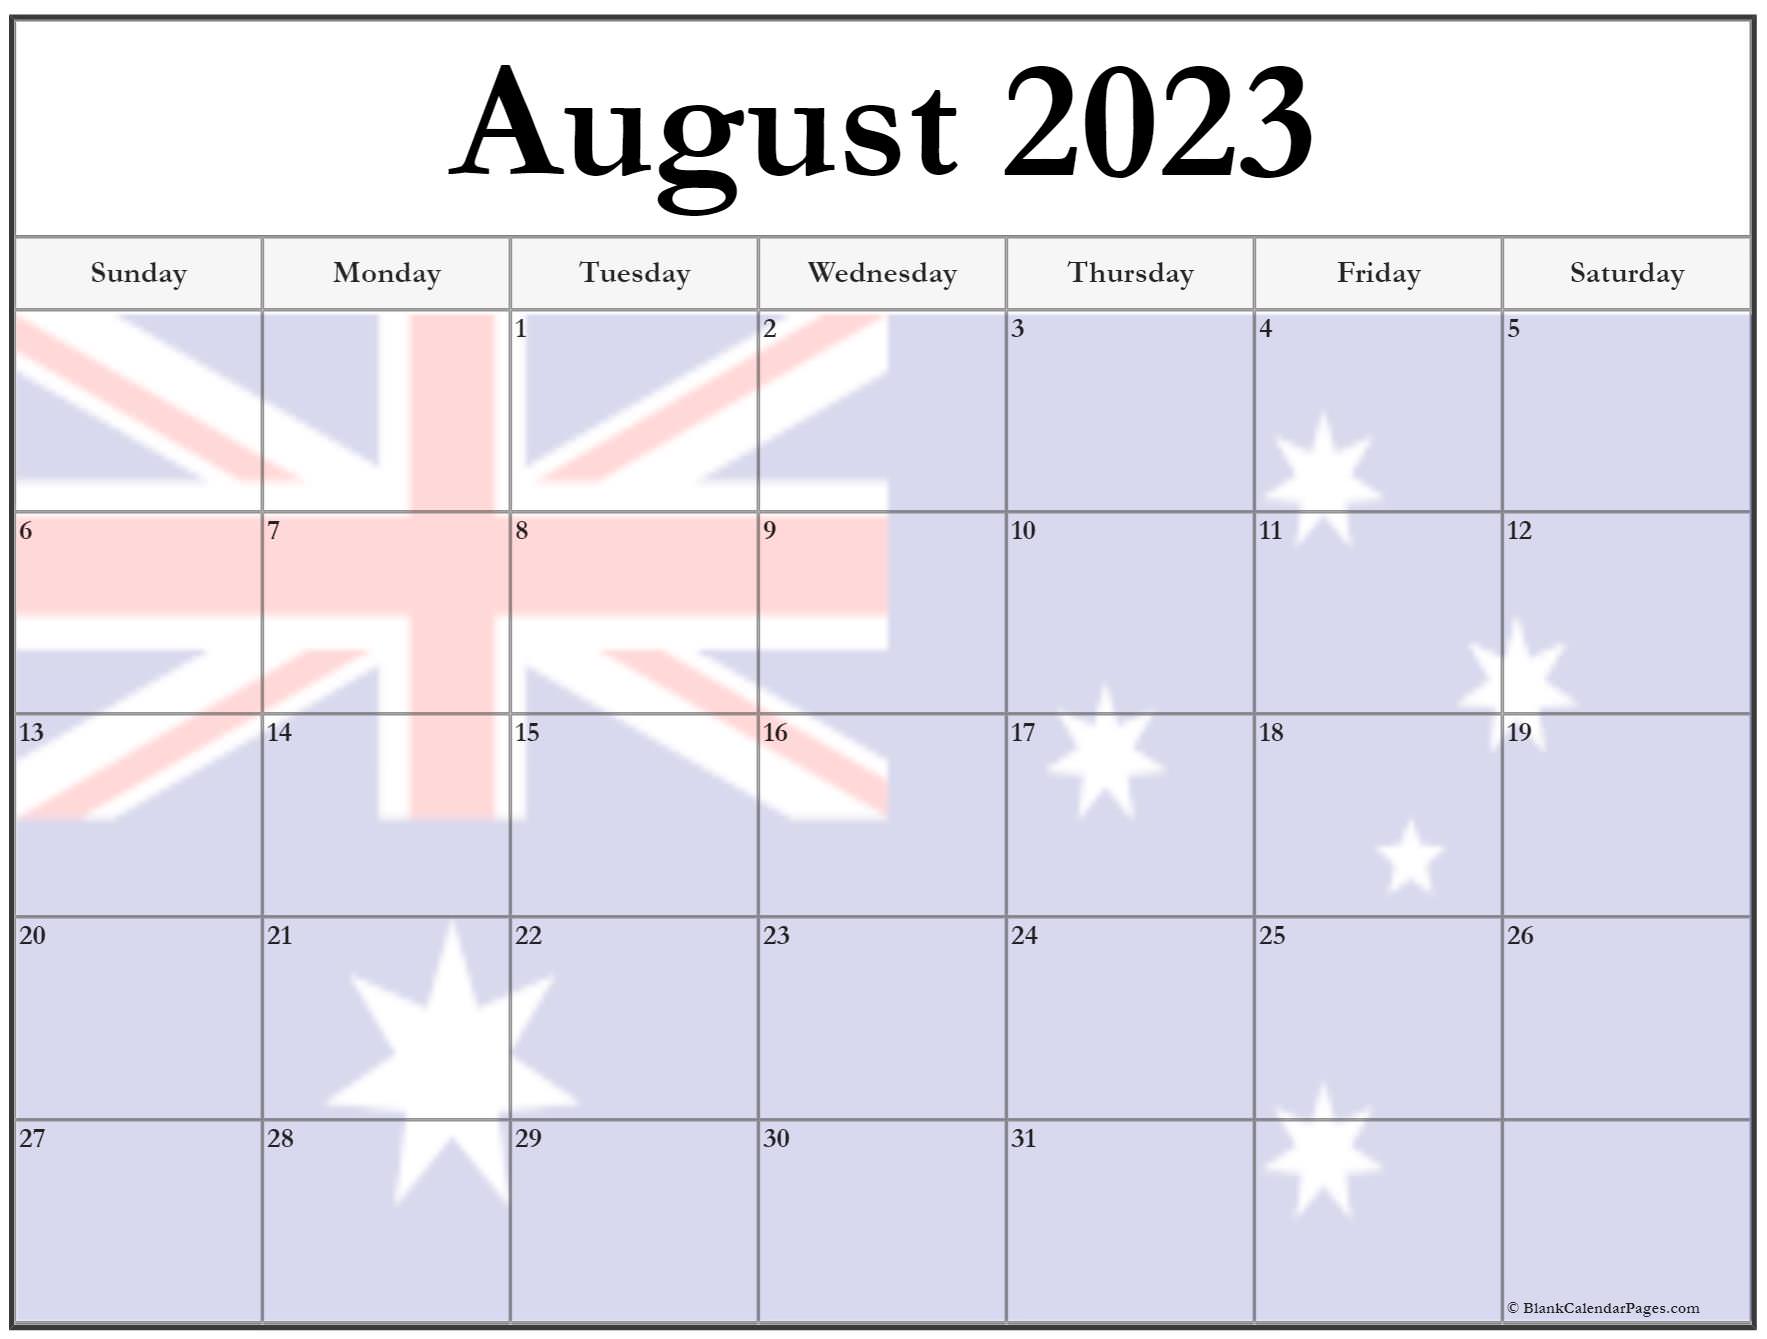 august-2023-australian-calendar-pelajaran